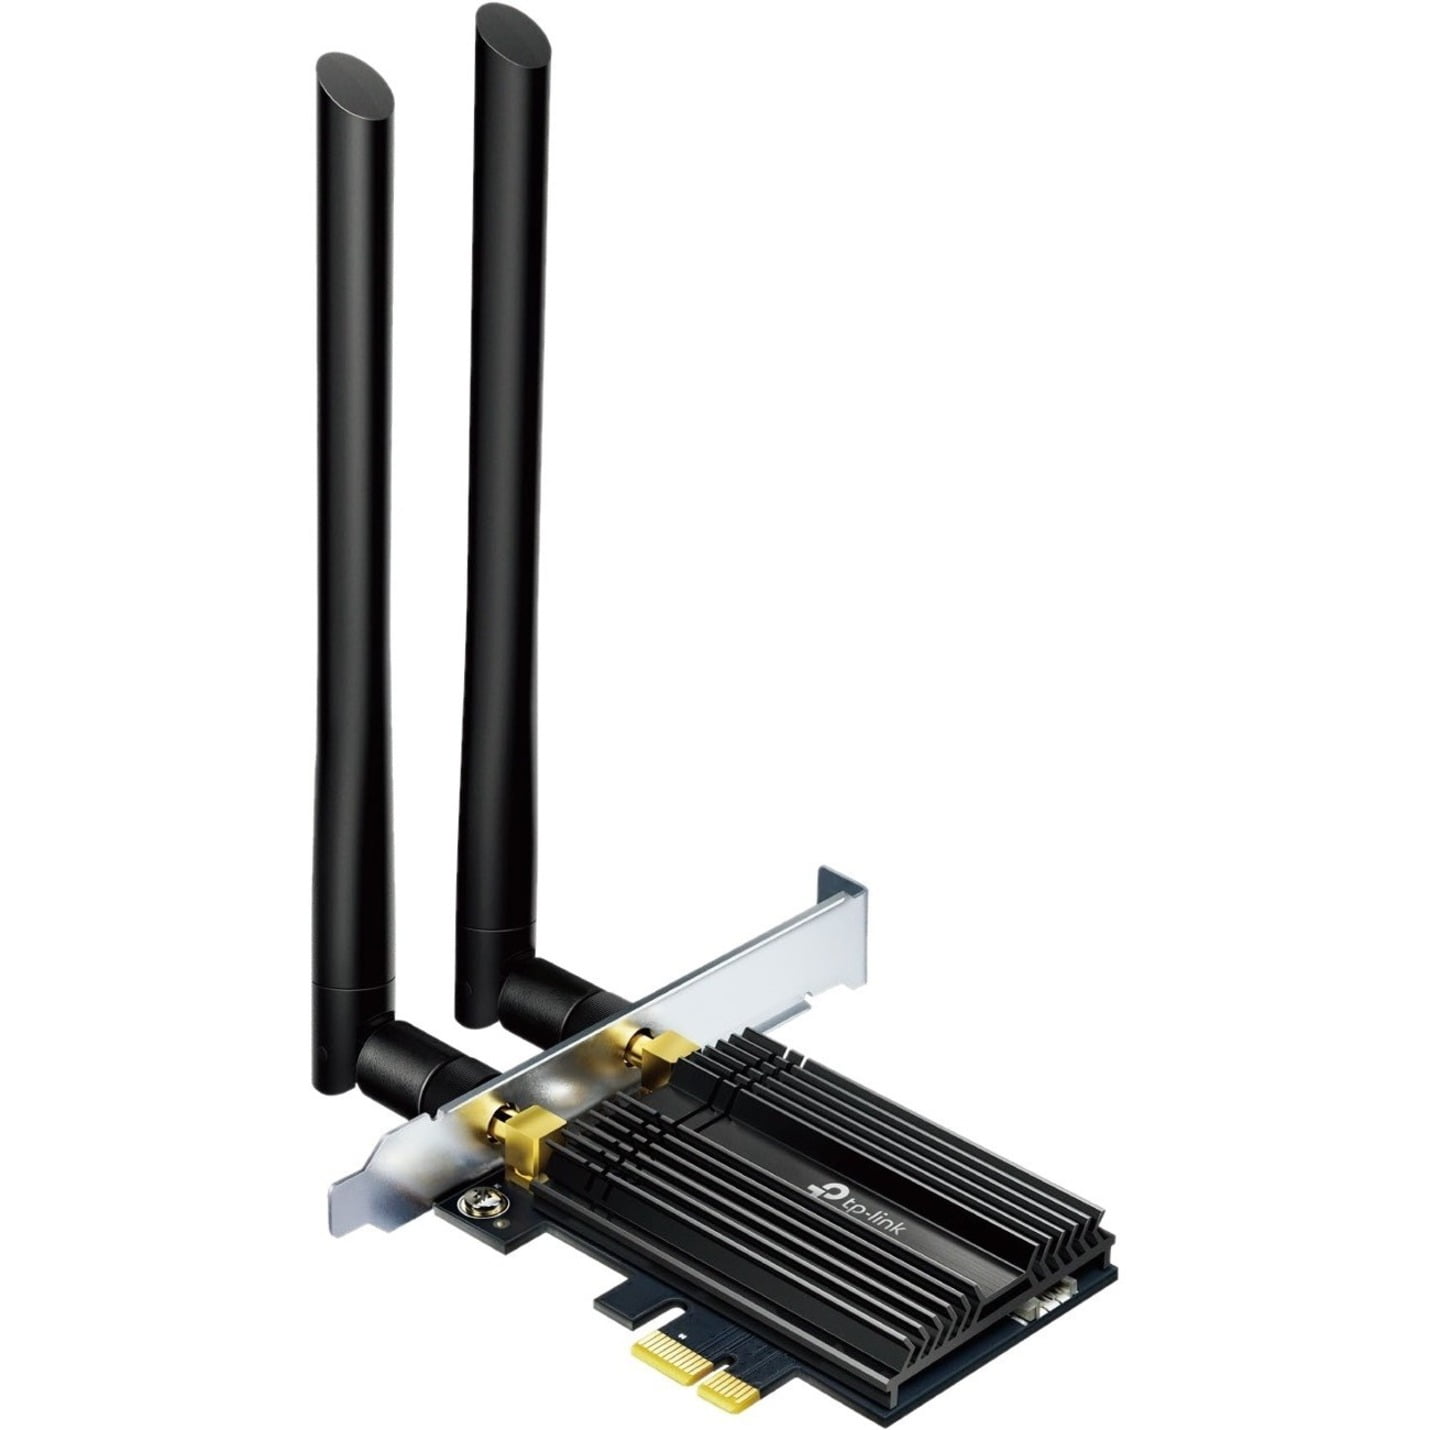 TP-Link Kit de 3 CPL Wifi 600Mbps Wi-Fi Range Extender, AV600 TL-WPA4220  KIT